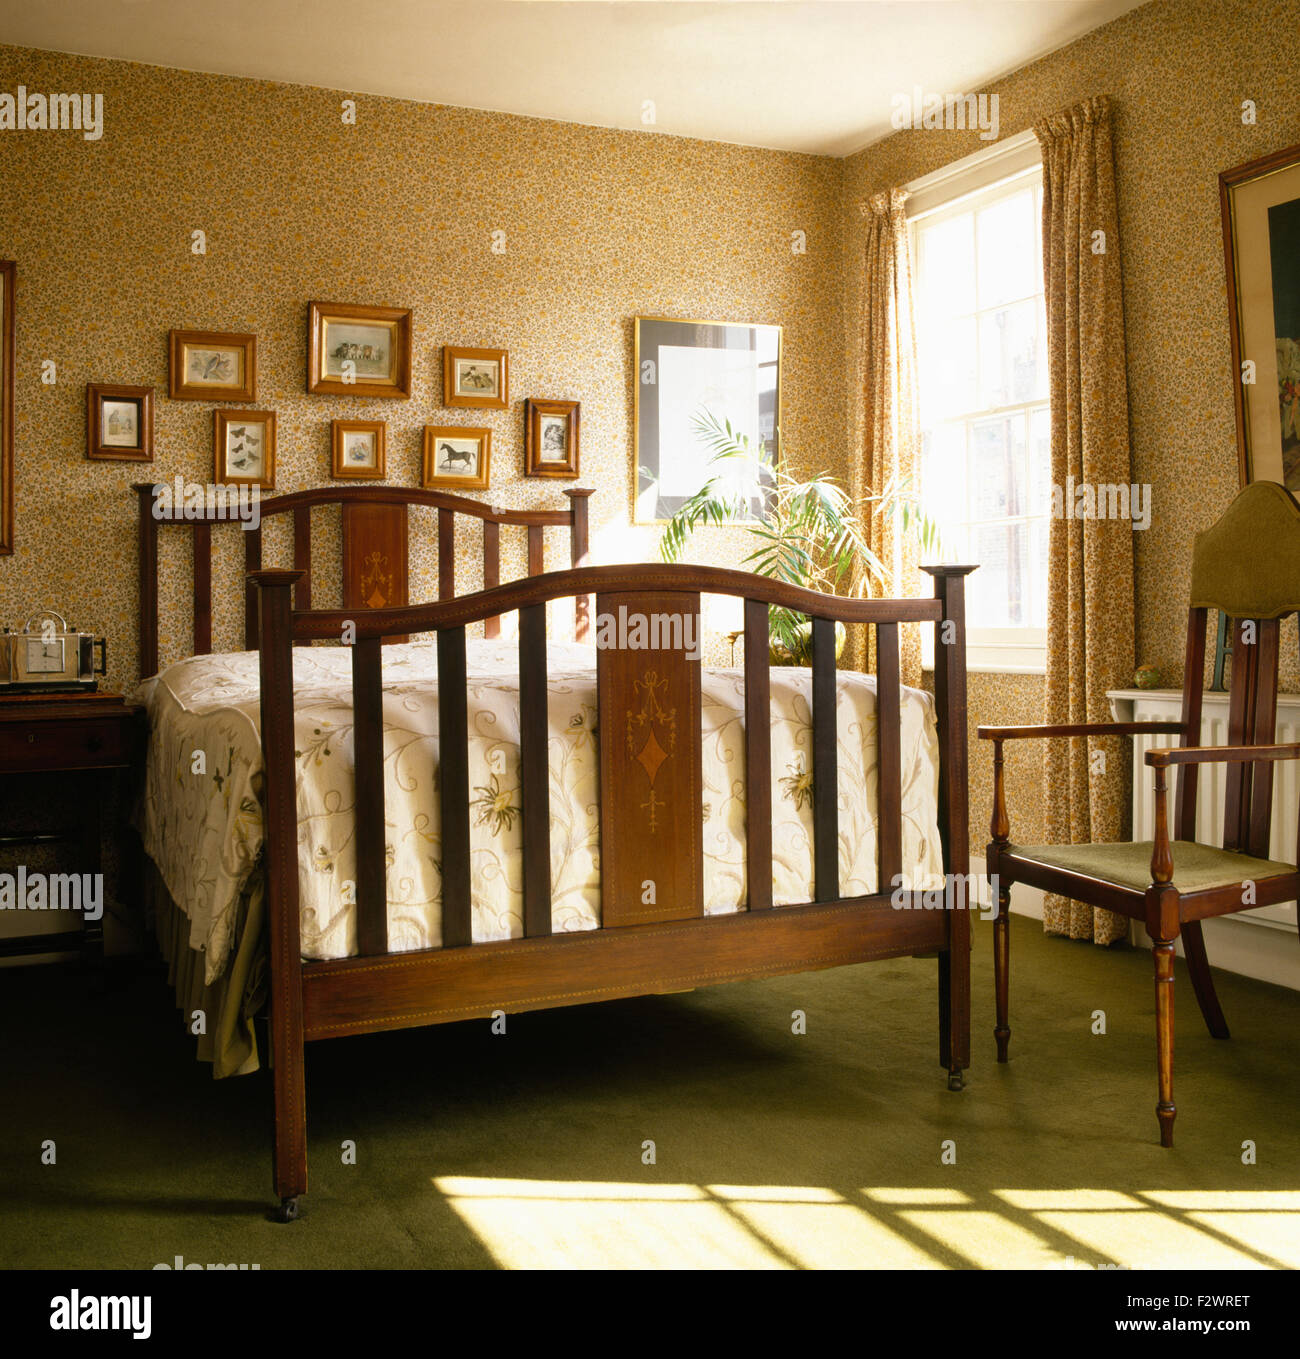 Mustertapeten und einfachen Holzbett in vierziger Jahre Stil Schlafzimmer Stockfoto